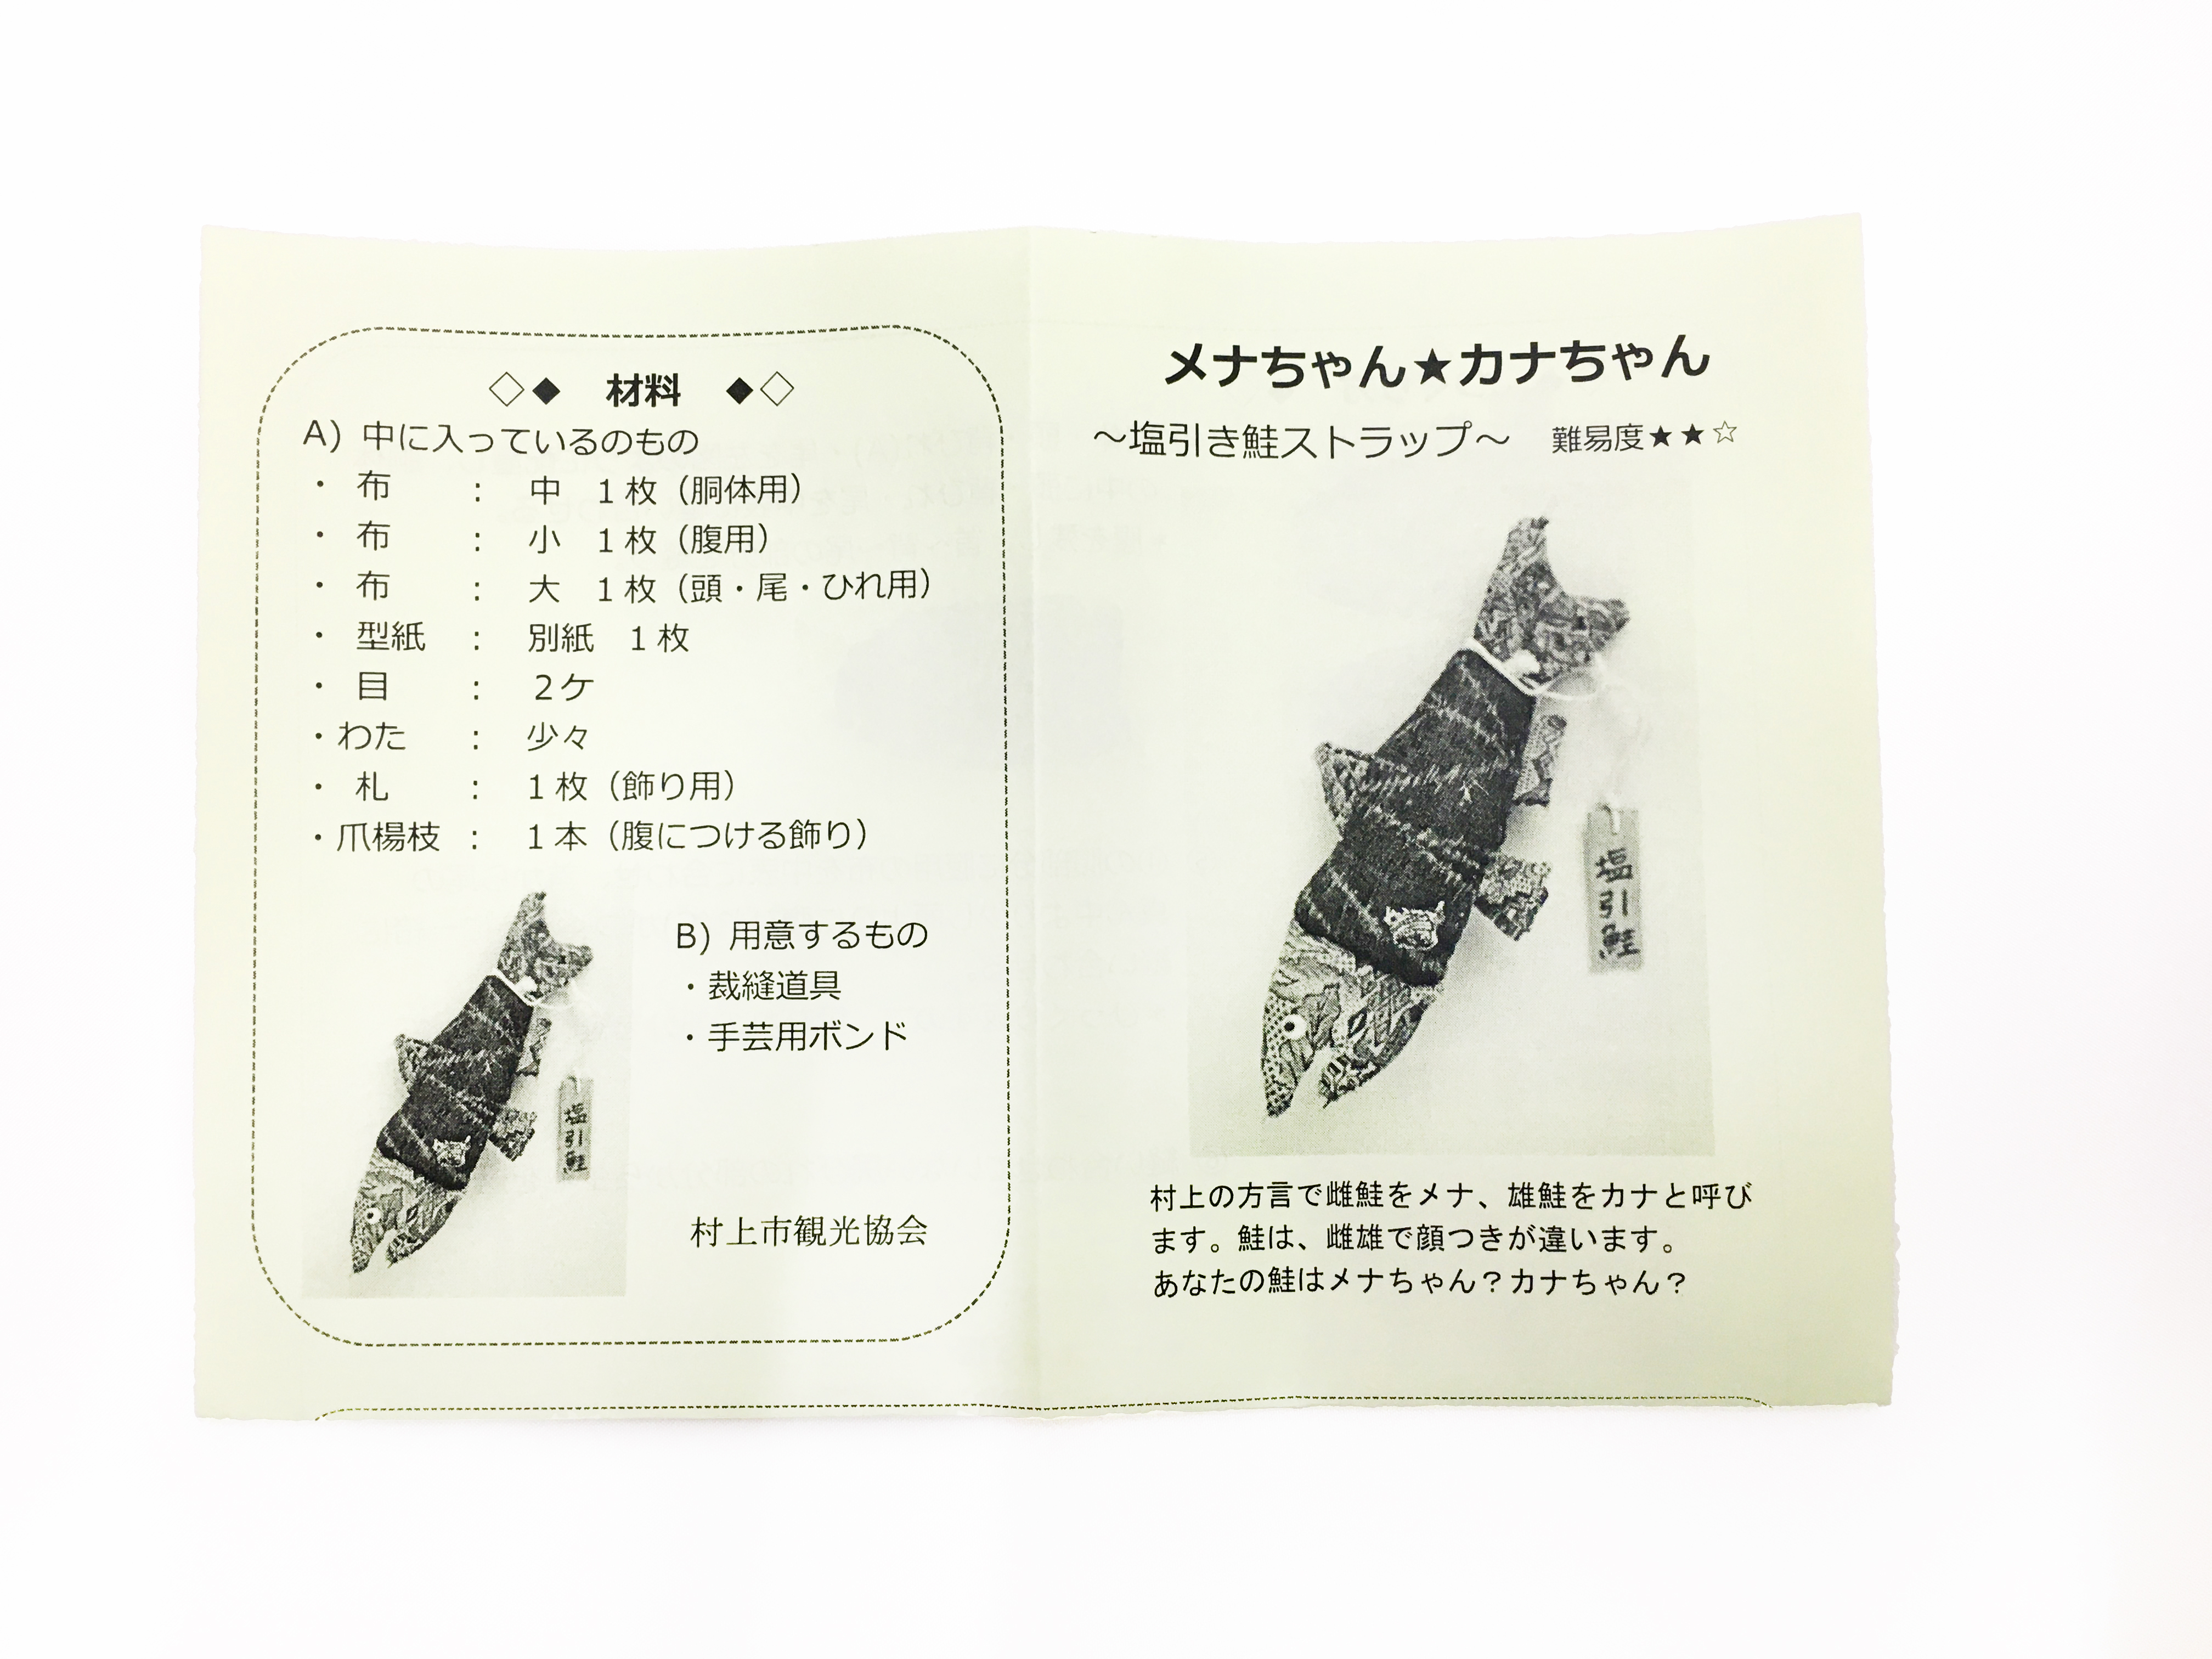 手作りキット 塩引き鮭マスコットストラップ作成キット 村上市観光協会オリジナルグッズ Murakami Original